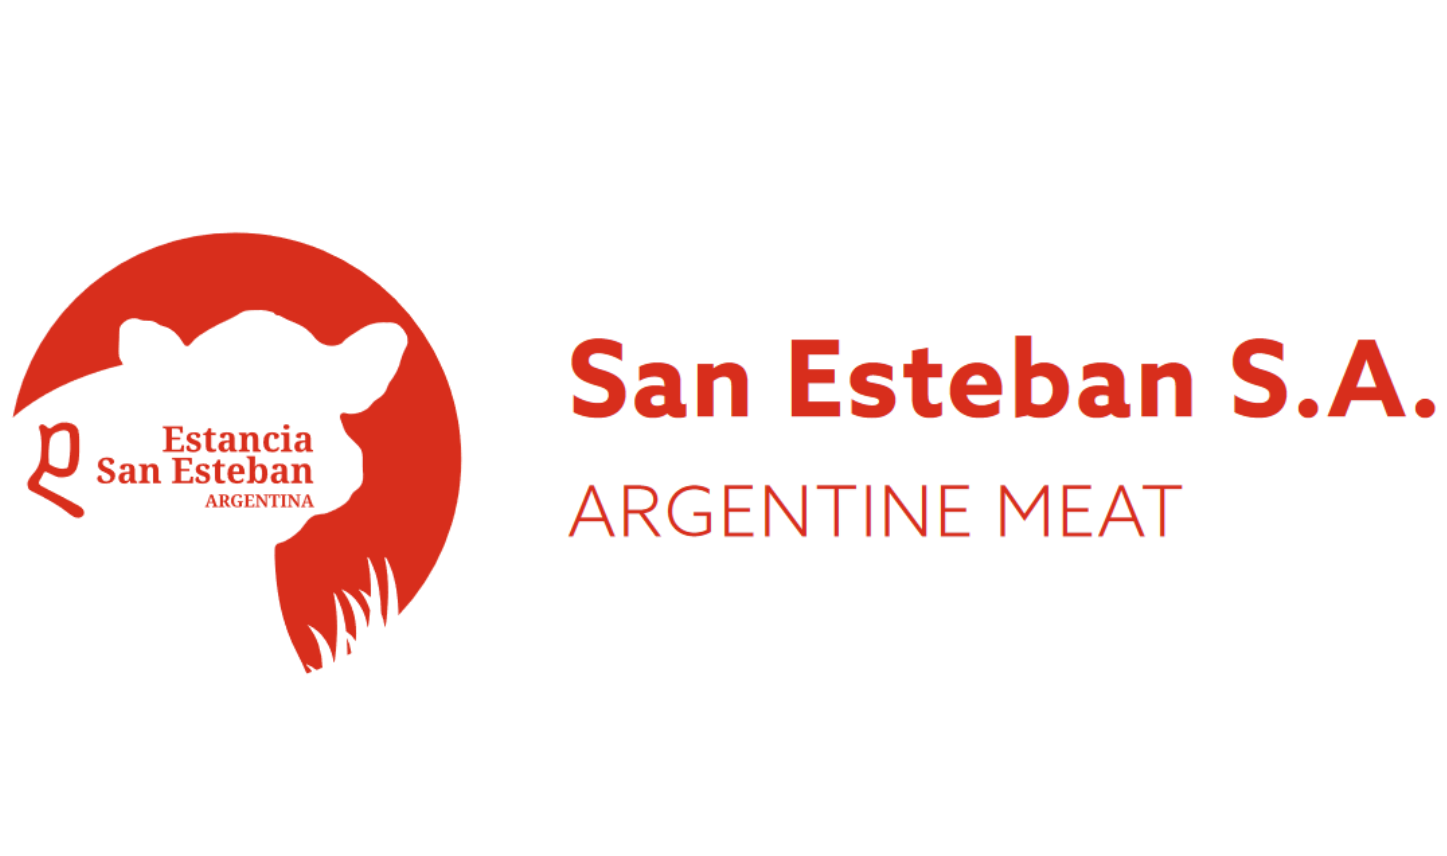 Estancia San Esteban Argentina